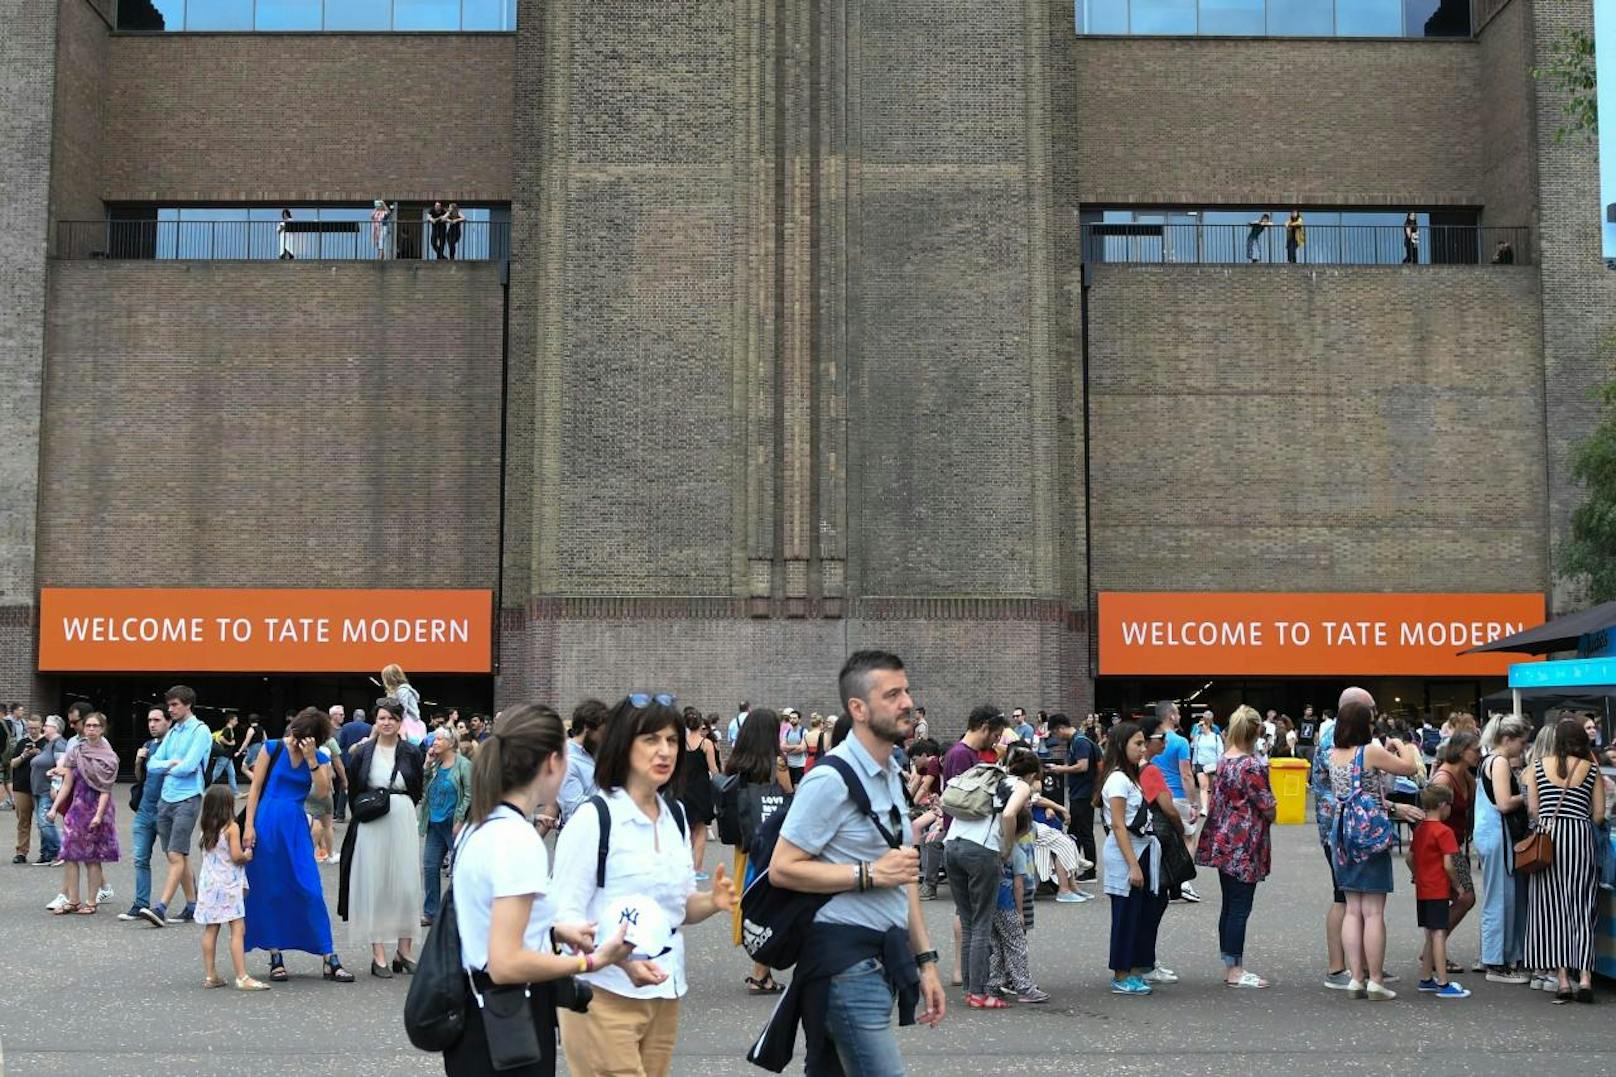 Die Tate Modern Gallery ist eine beliebte Touristenattraktion. Zum Zeitpunkt des Vorfalls war das Museum gut besucht.

 